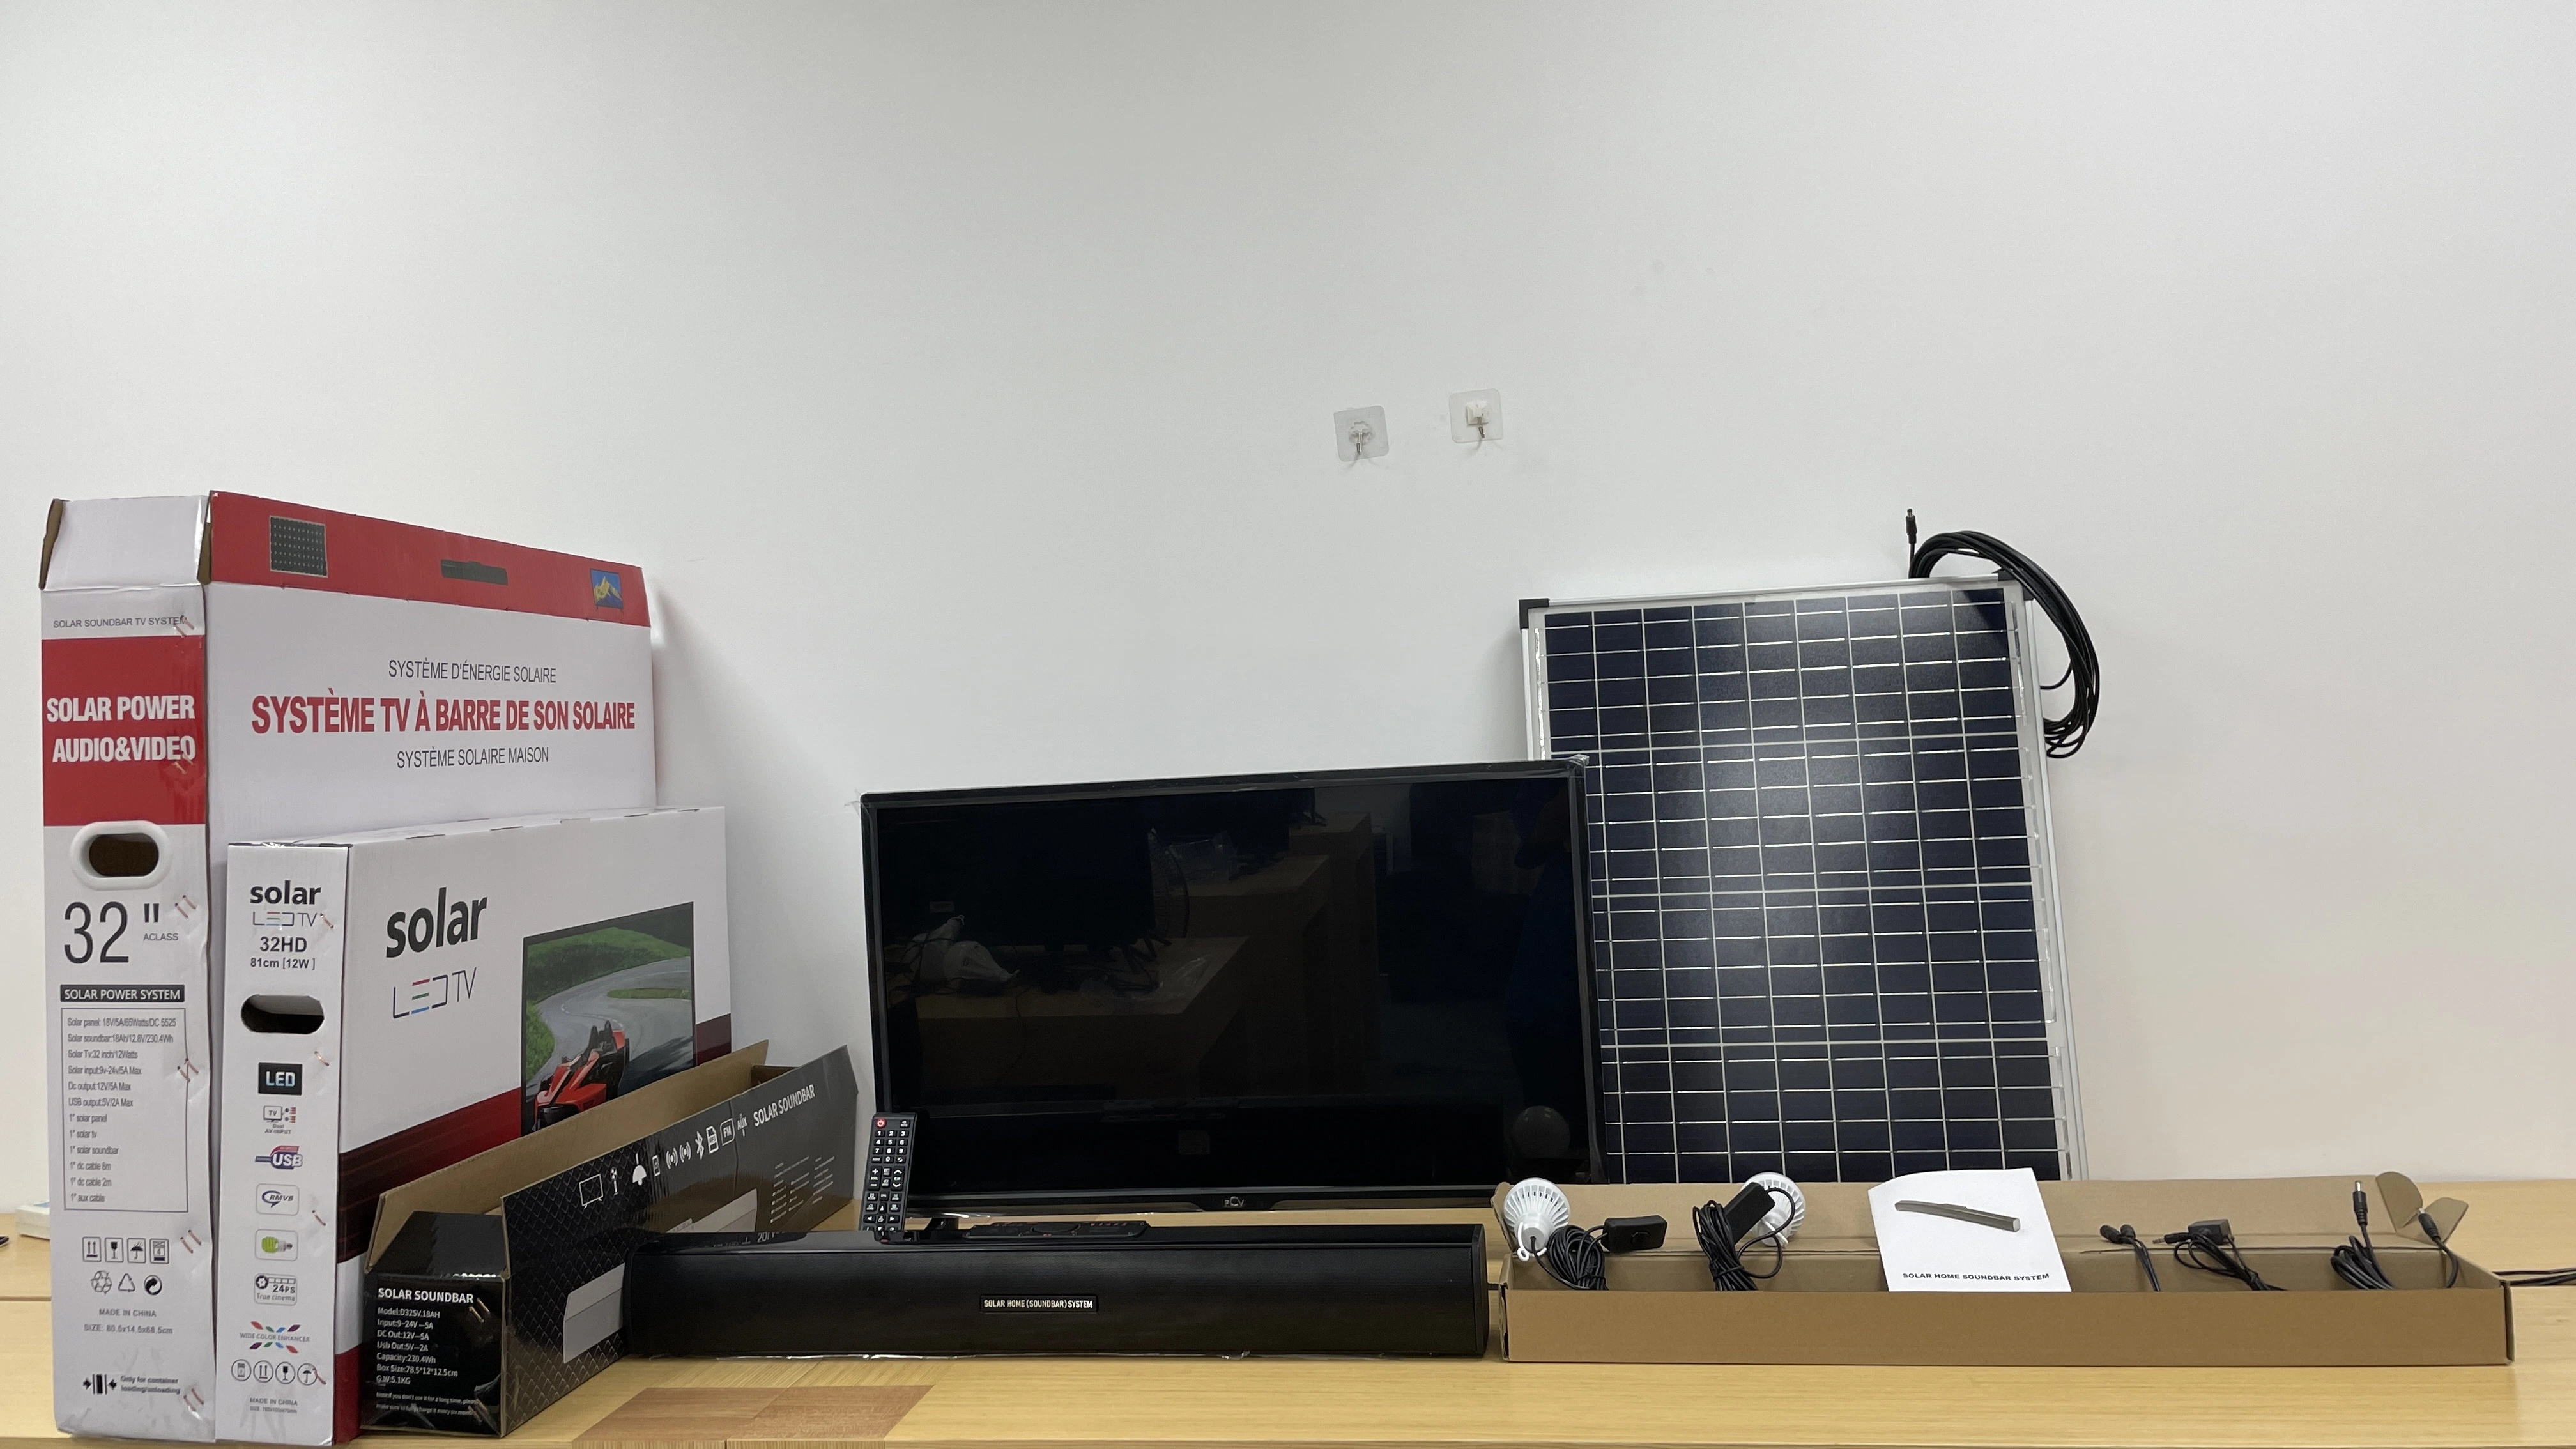 Système TV solaire système Home Cinéma système de haut-parleurs barre de son pour Télévision et Home Cinéma Bluetooth sans fil